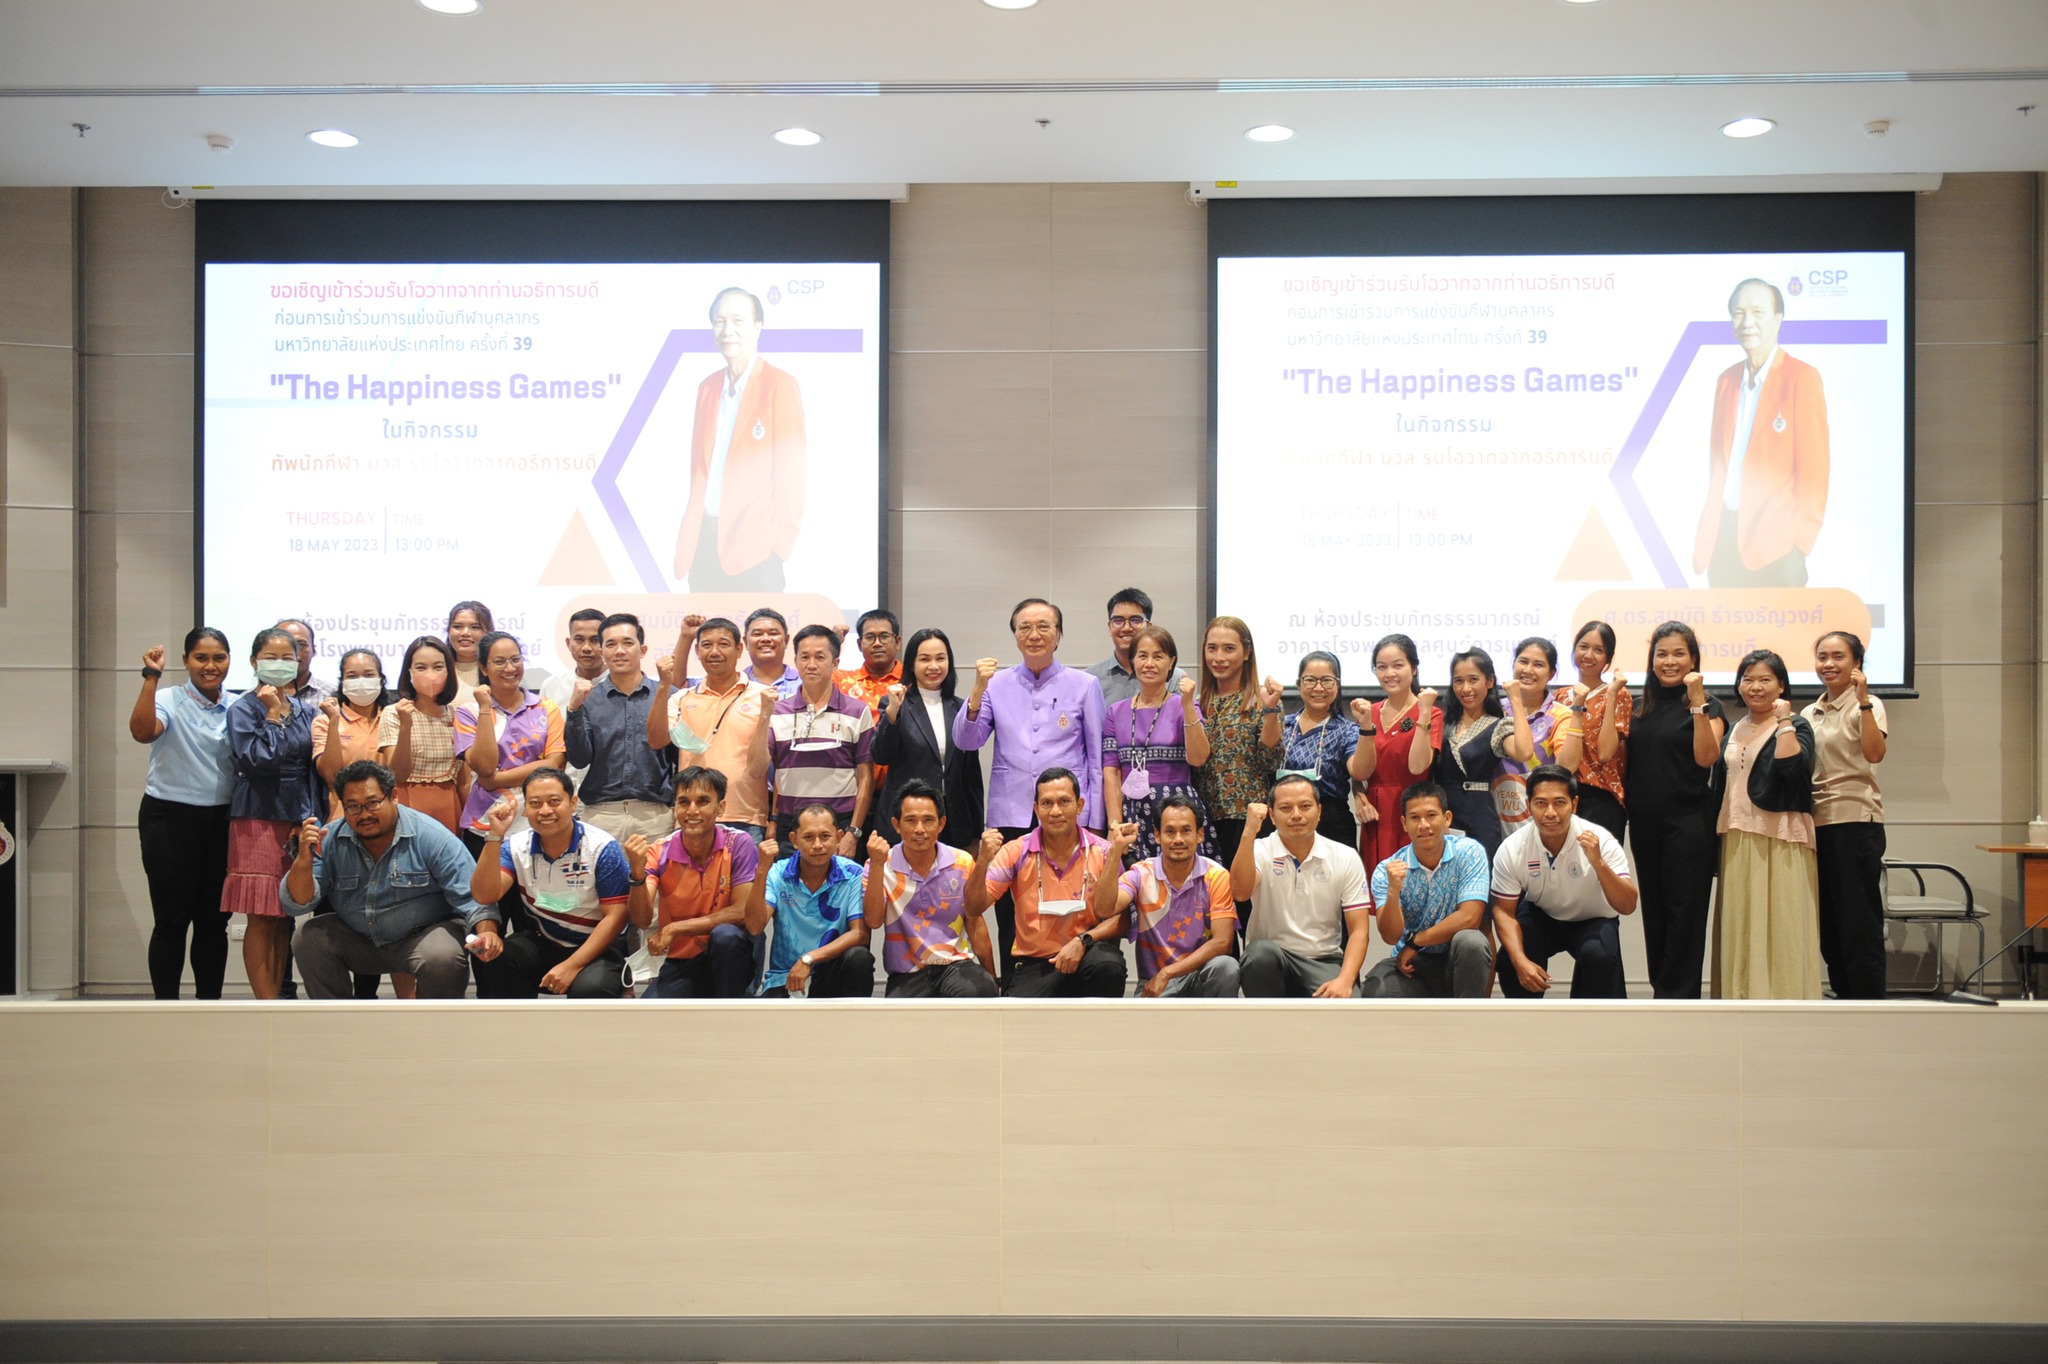 ศาสตราจารย์ ดร.สมบัติ ธำรงธัญวงศ์ รักษาการแทนอธิการบดี มหาวิทยาลัยวลัยลักษณ์ ให้โอวาทแก่นักกีฬาบุคลากรของมหาวิทยาลัย ก่อนเดินทางไปเข้าร่วมการแข่งขันกีฬาบุคลากรมหาวิทยาลัยแห่งประเทศไทย ครั้งที่ 39